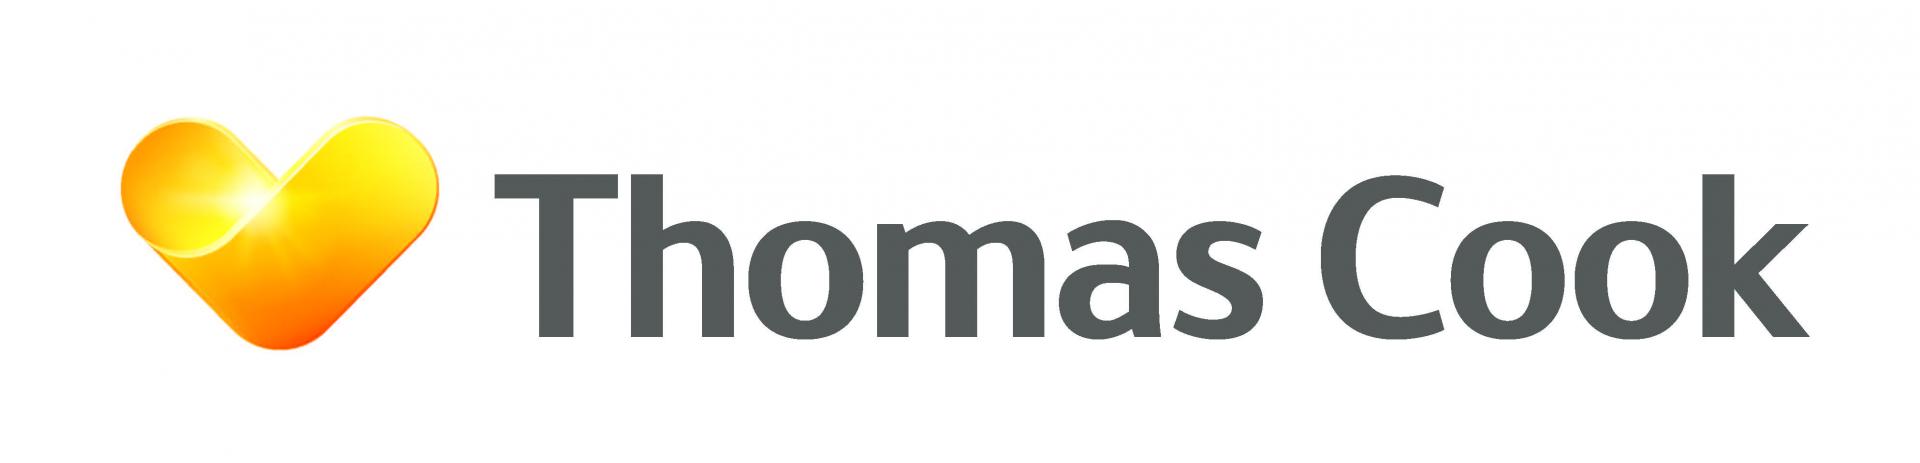 Thomas cook logo